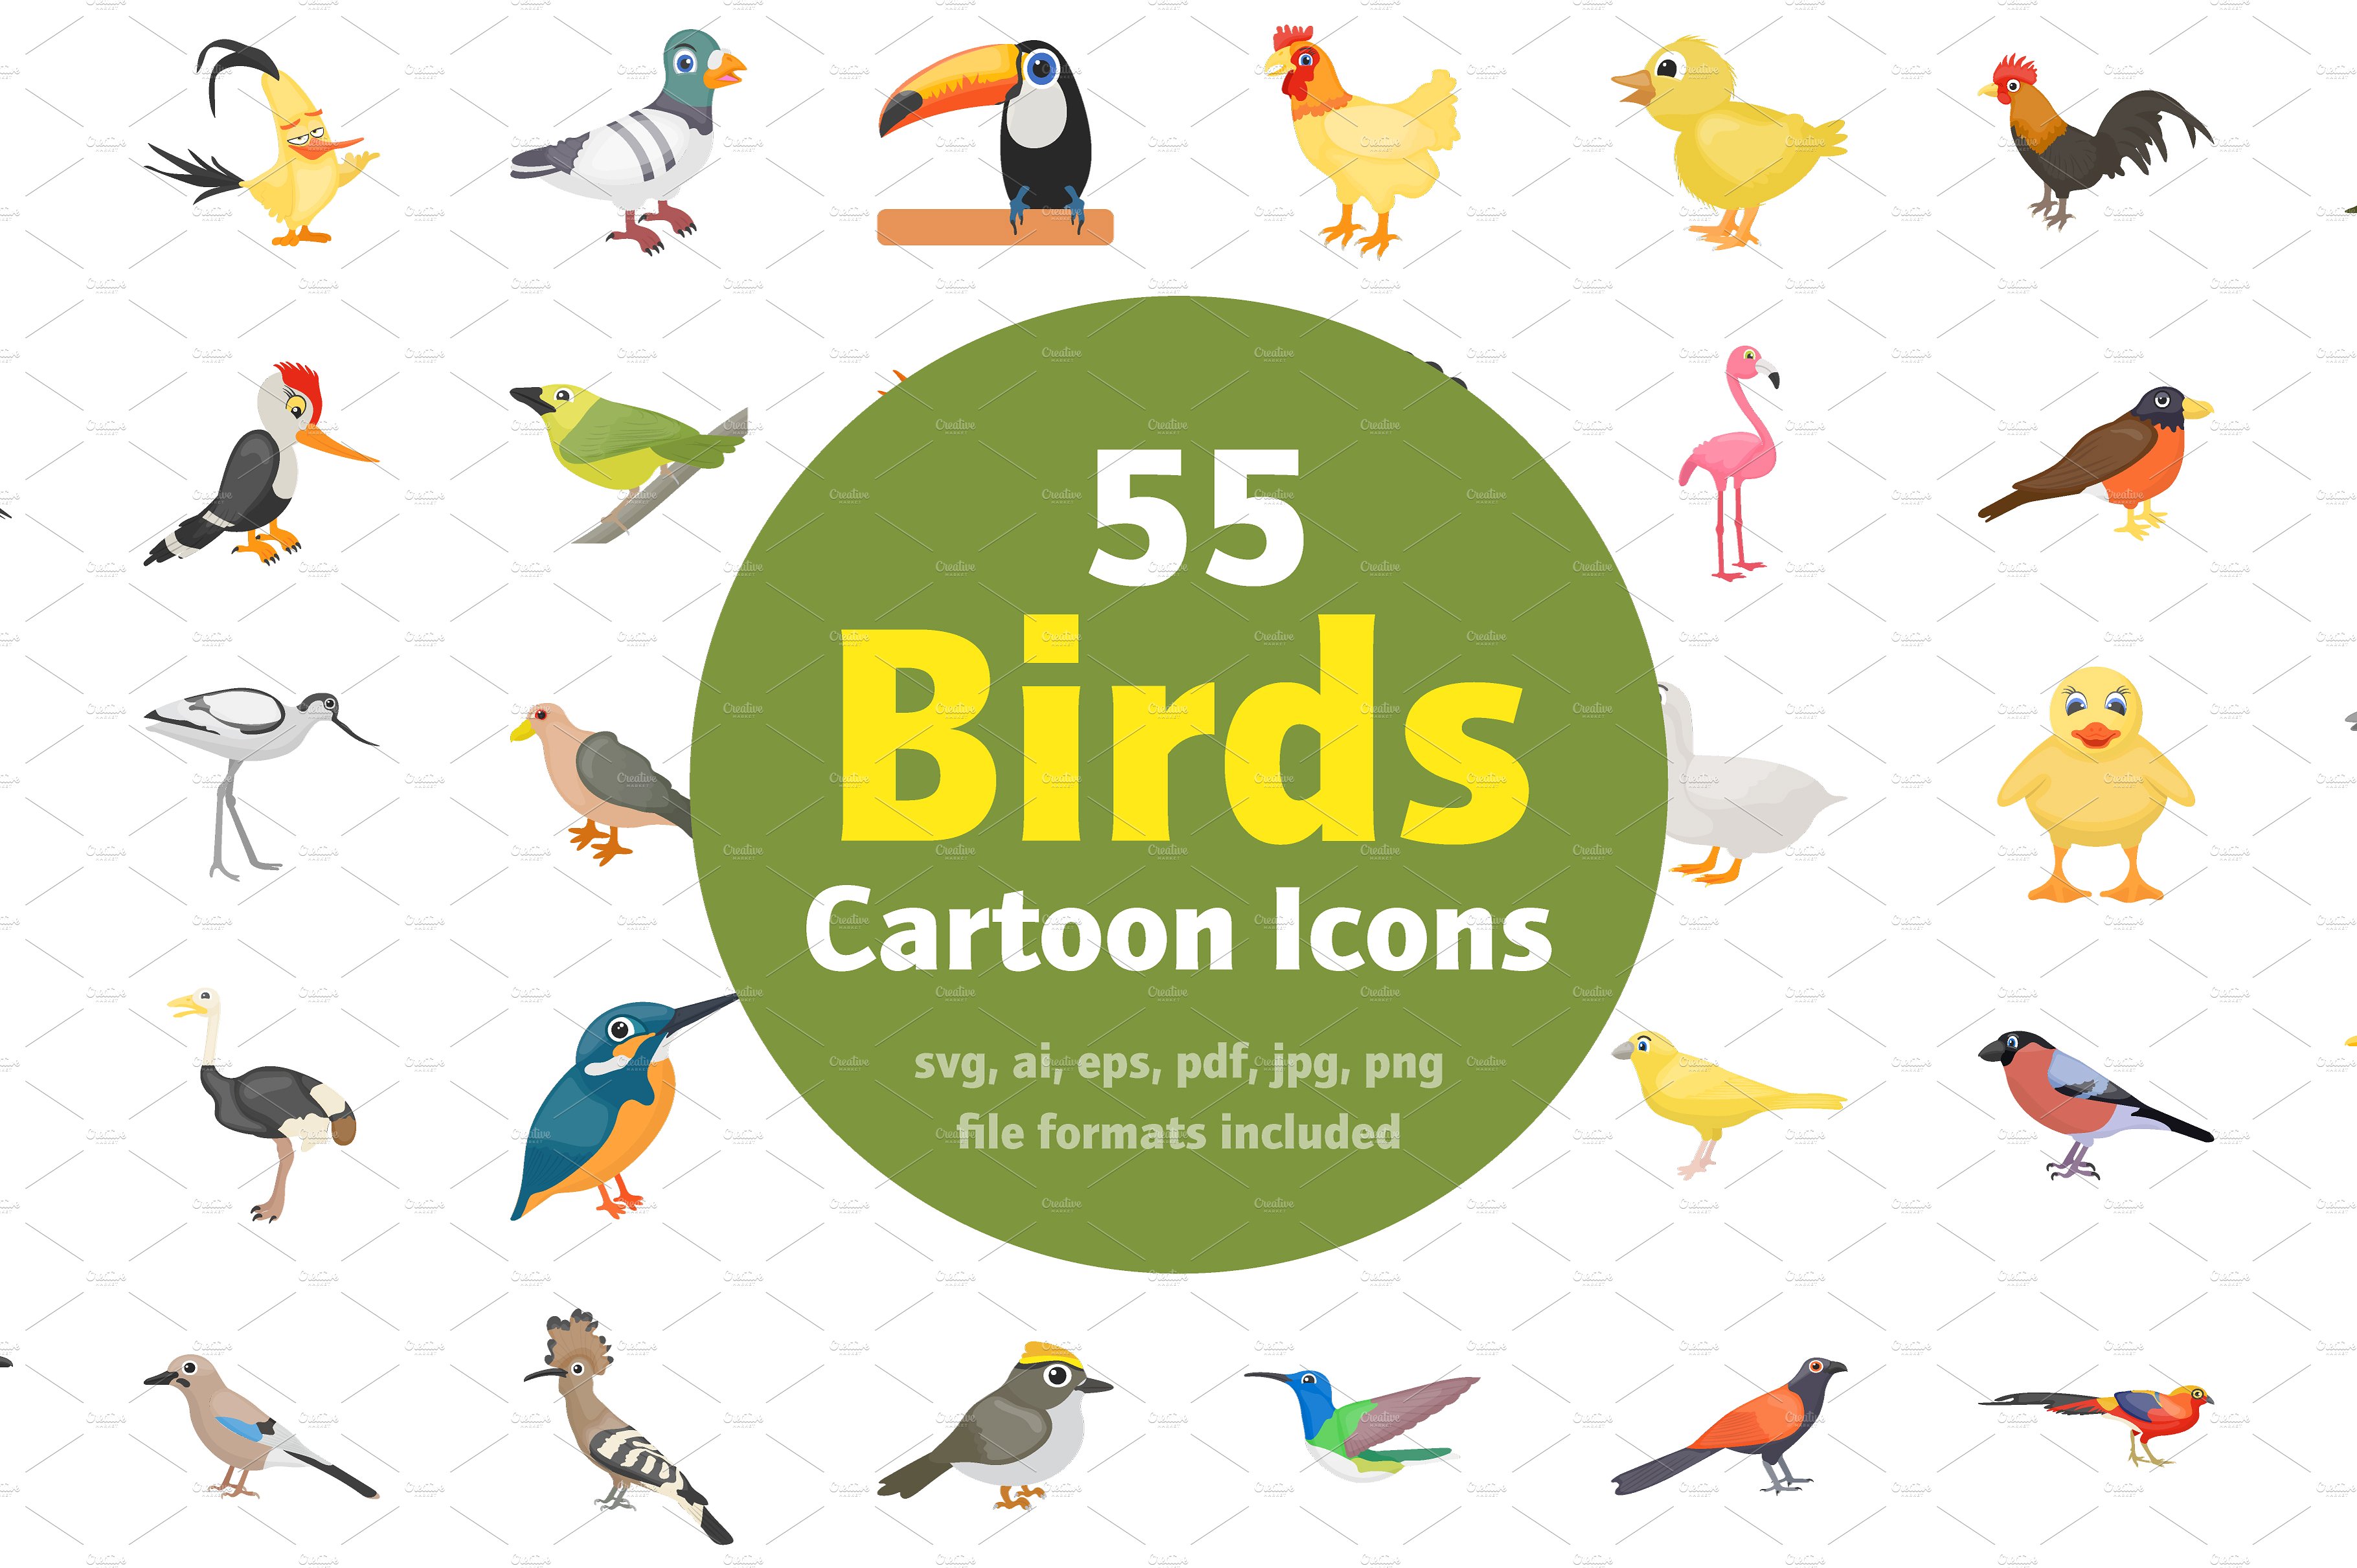 卡通鸟类矢量图标大全 55 Cartoon Birds Ve